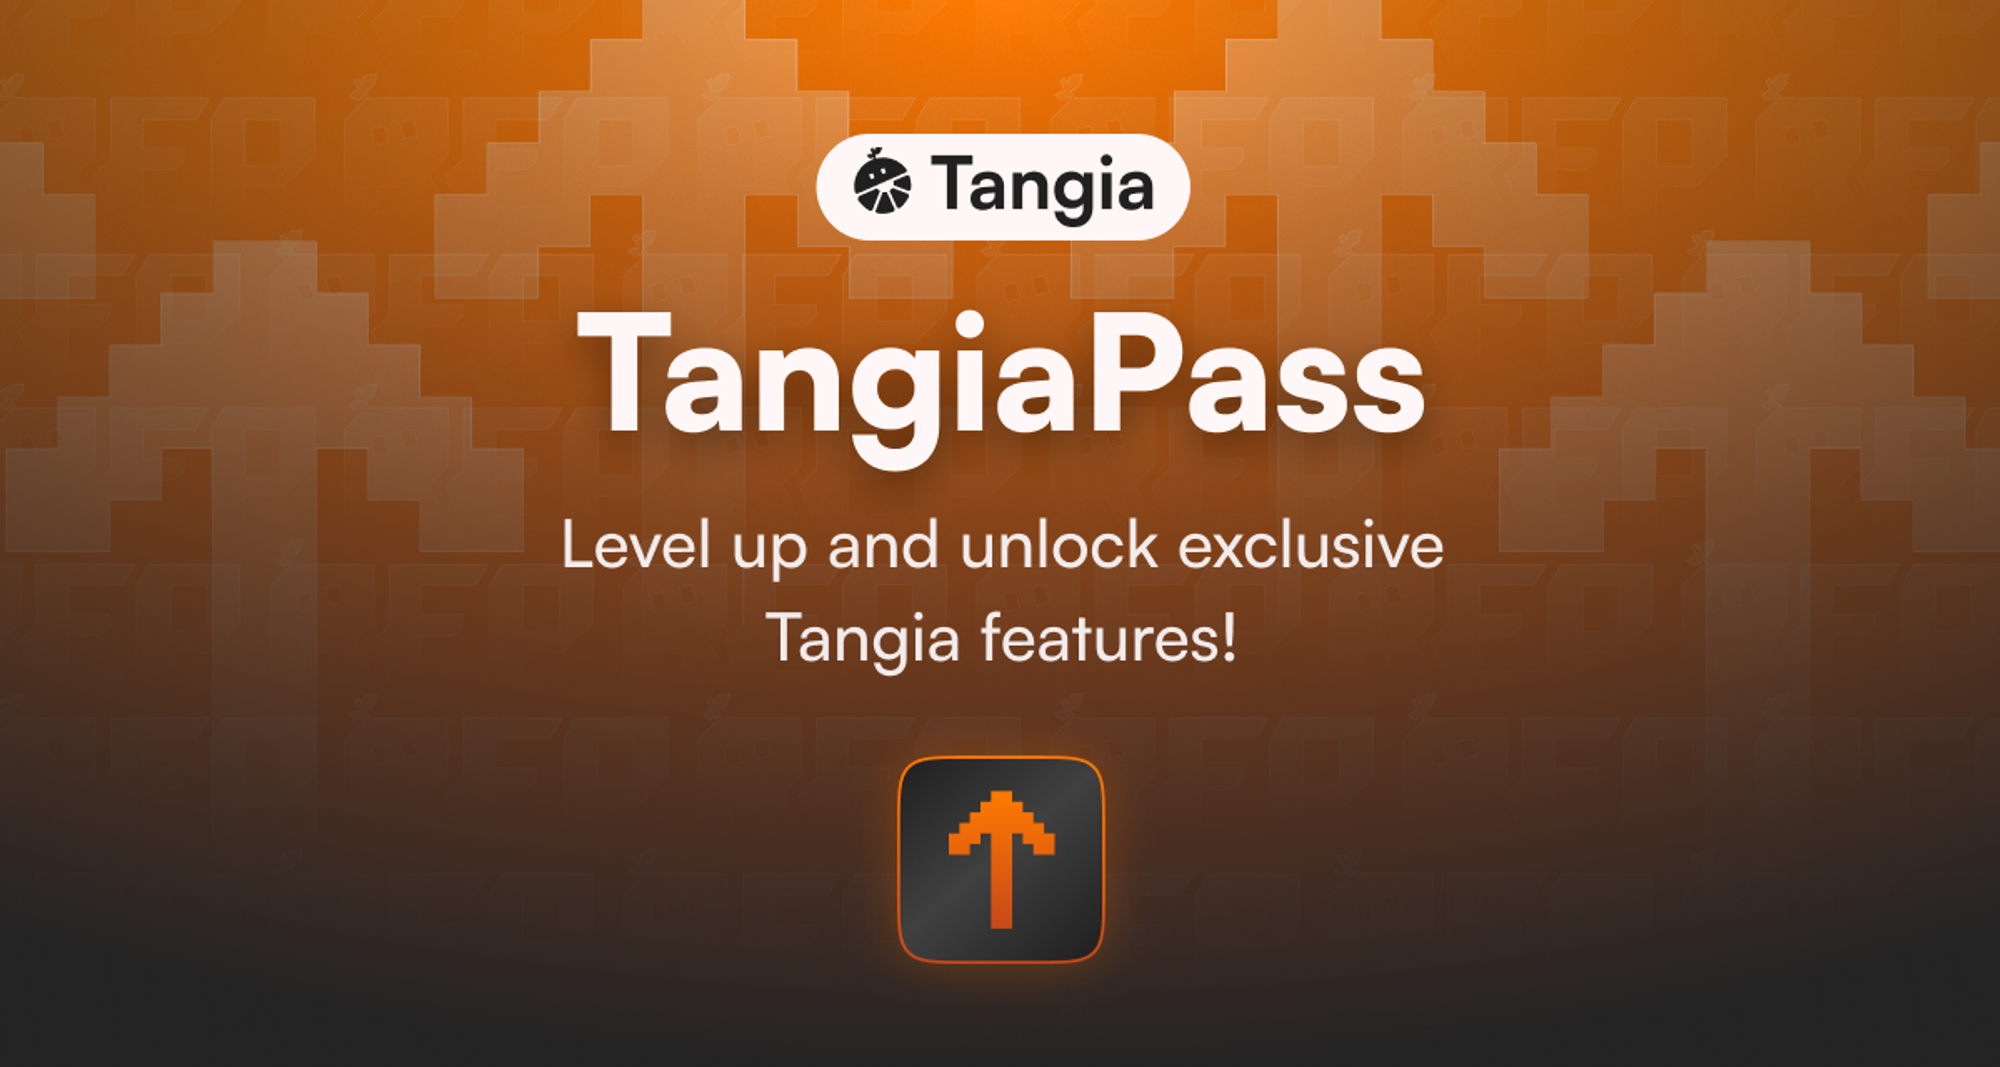 Tangia Pass